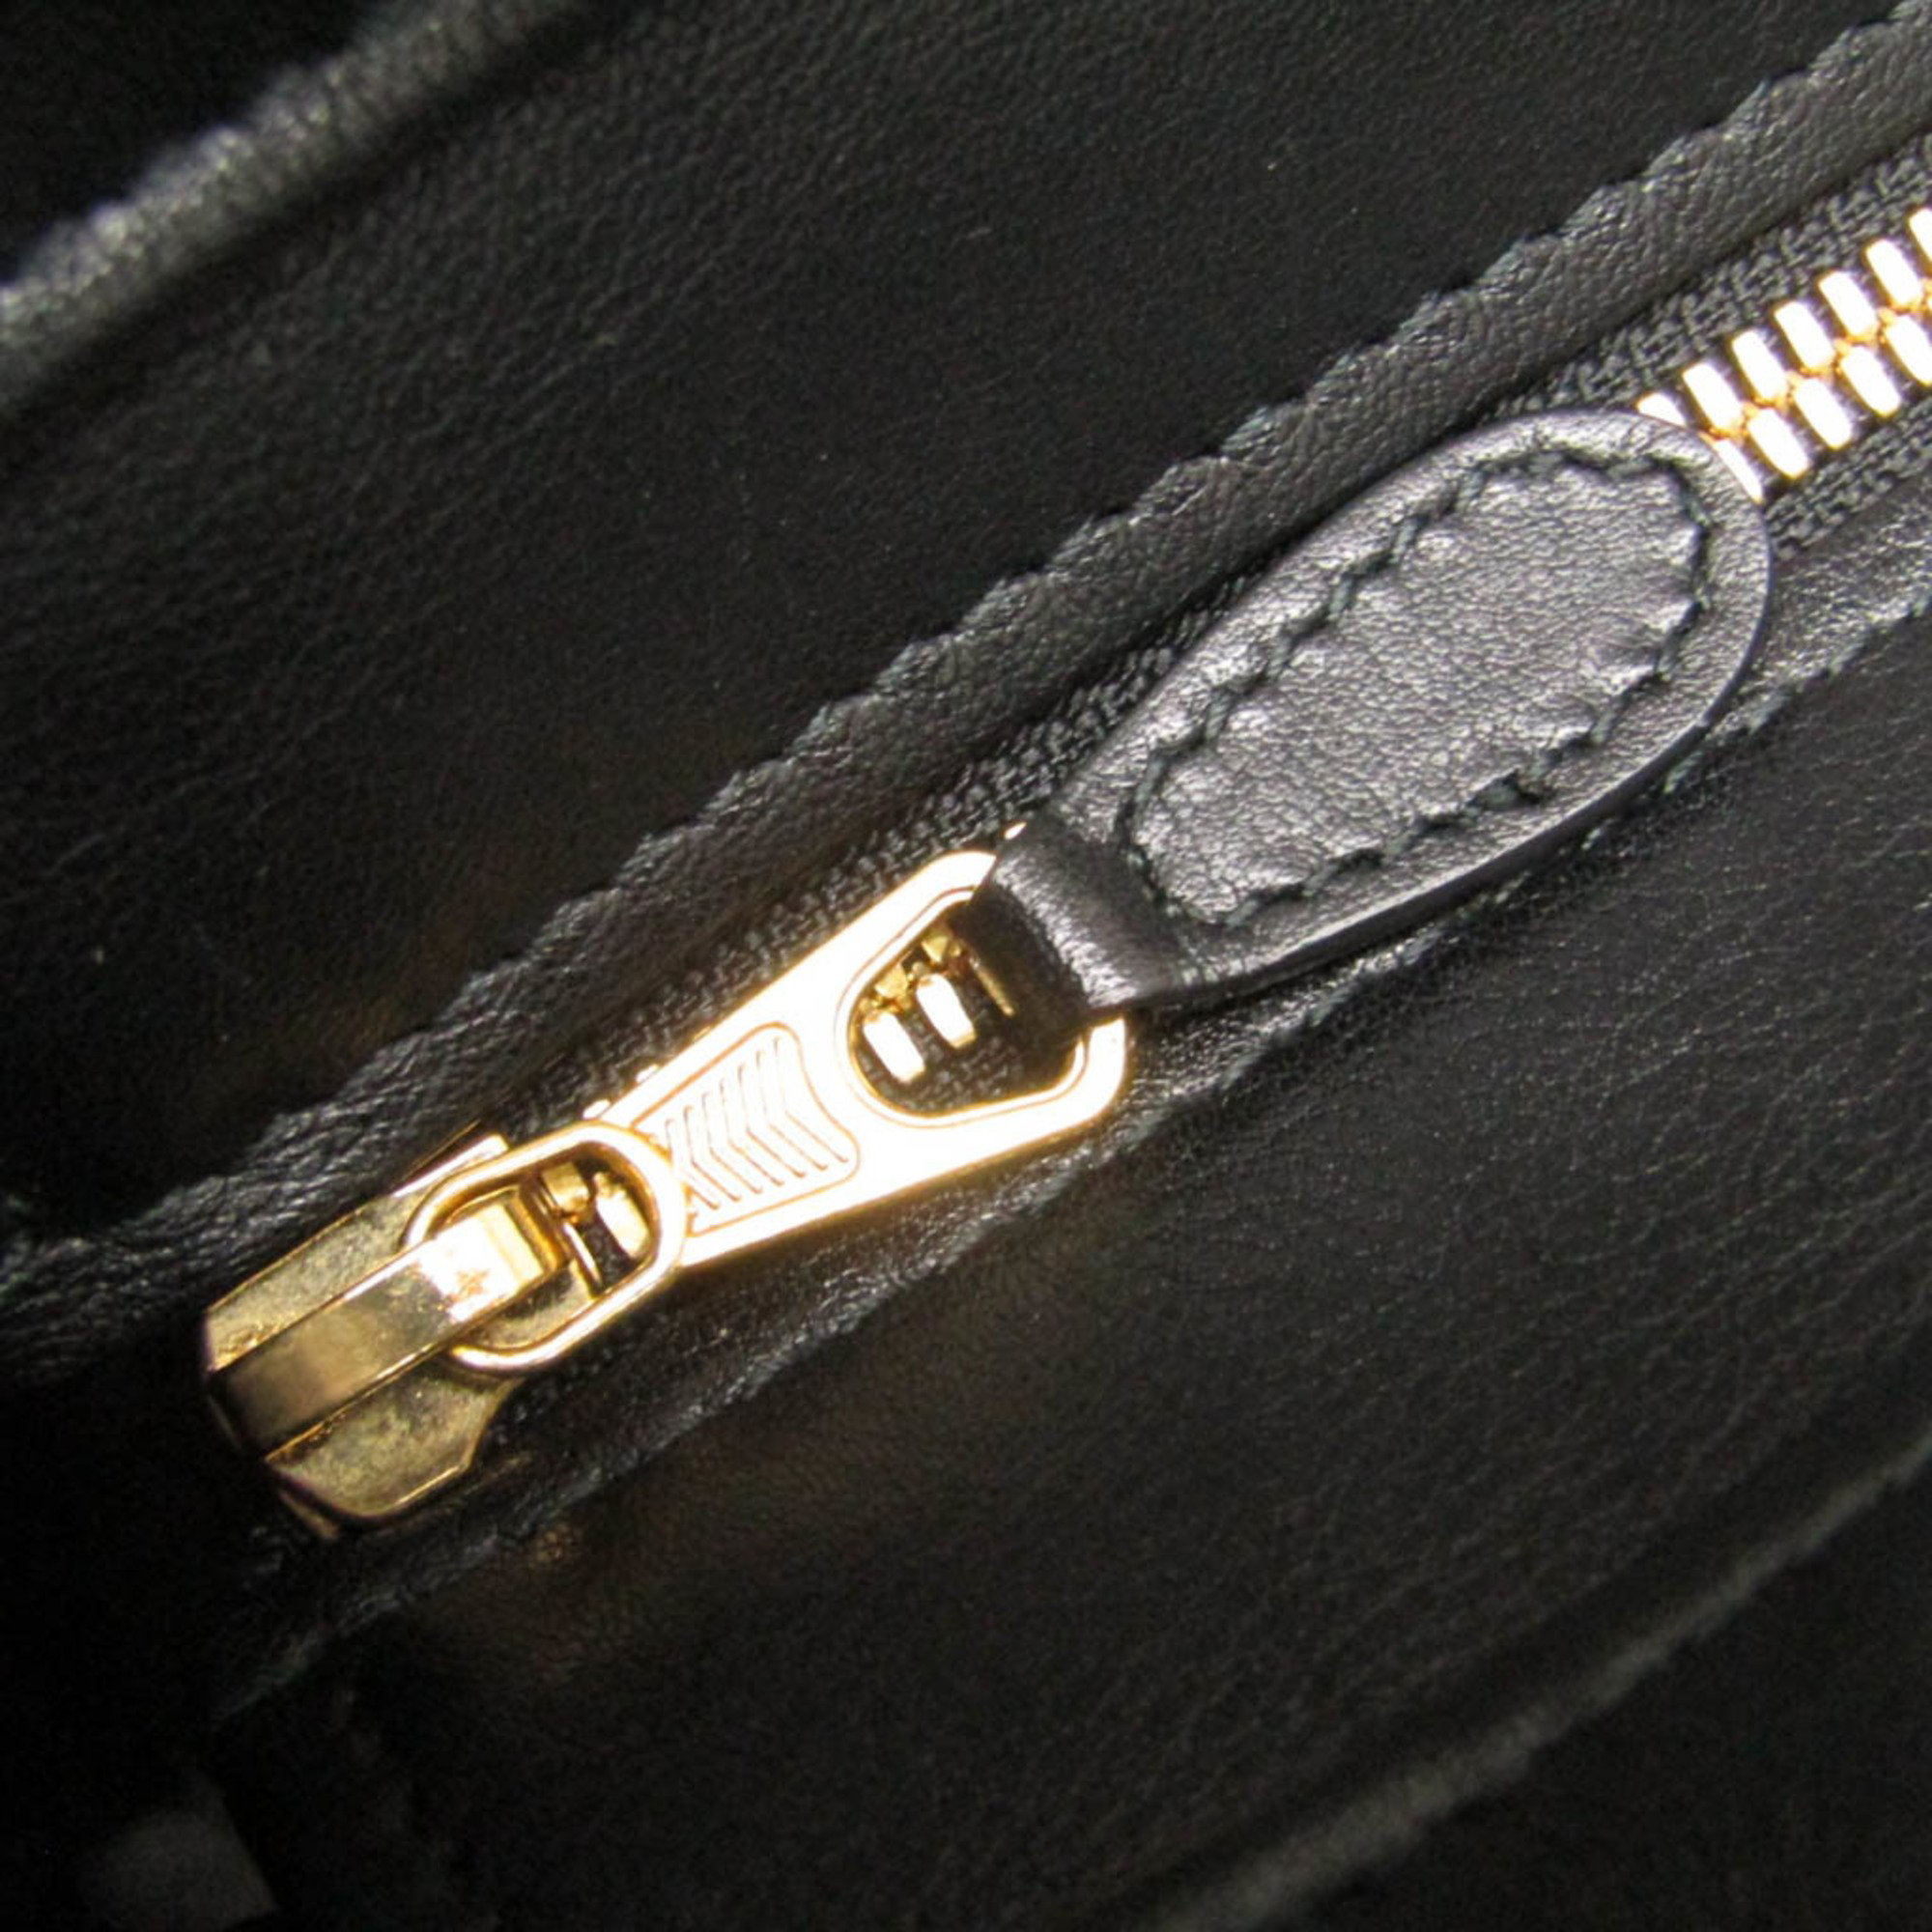 Balenciaga Black Leather Laundry Fringe XS Cabas Tote Bag